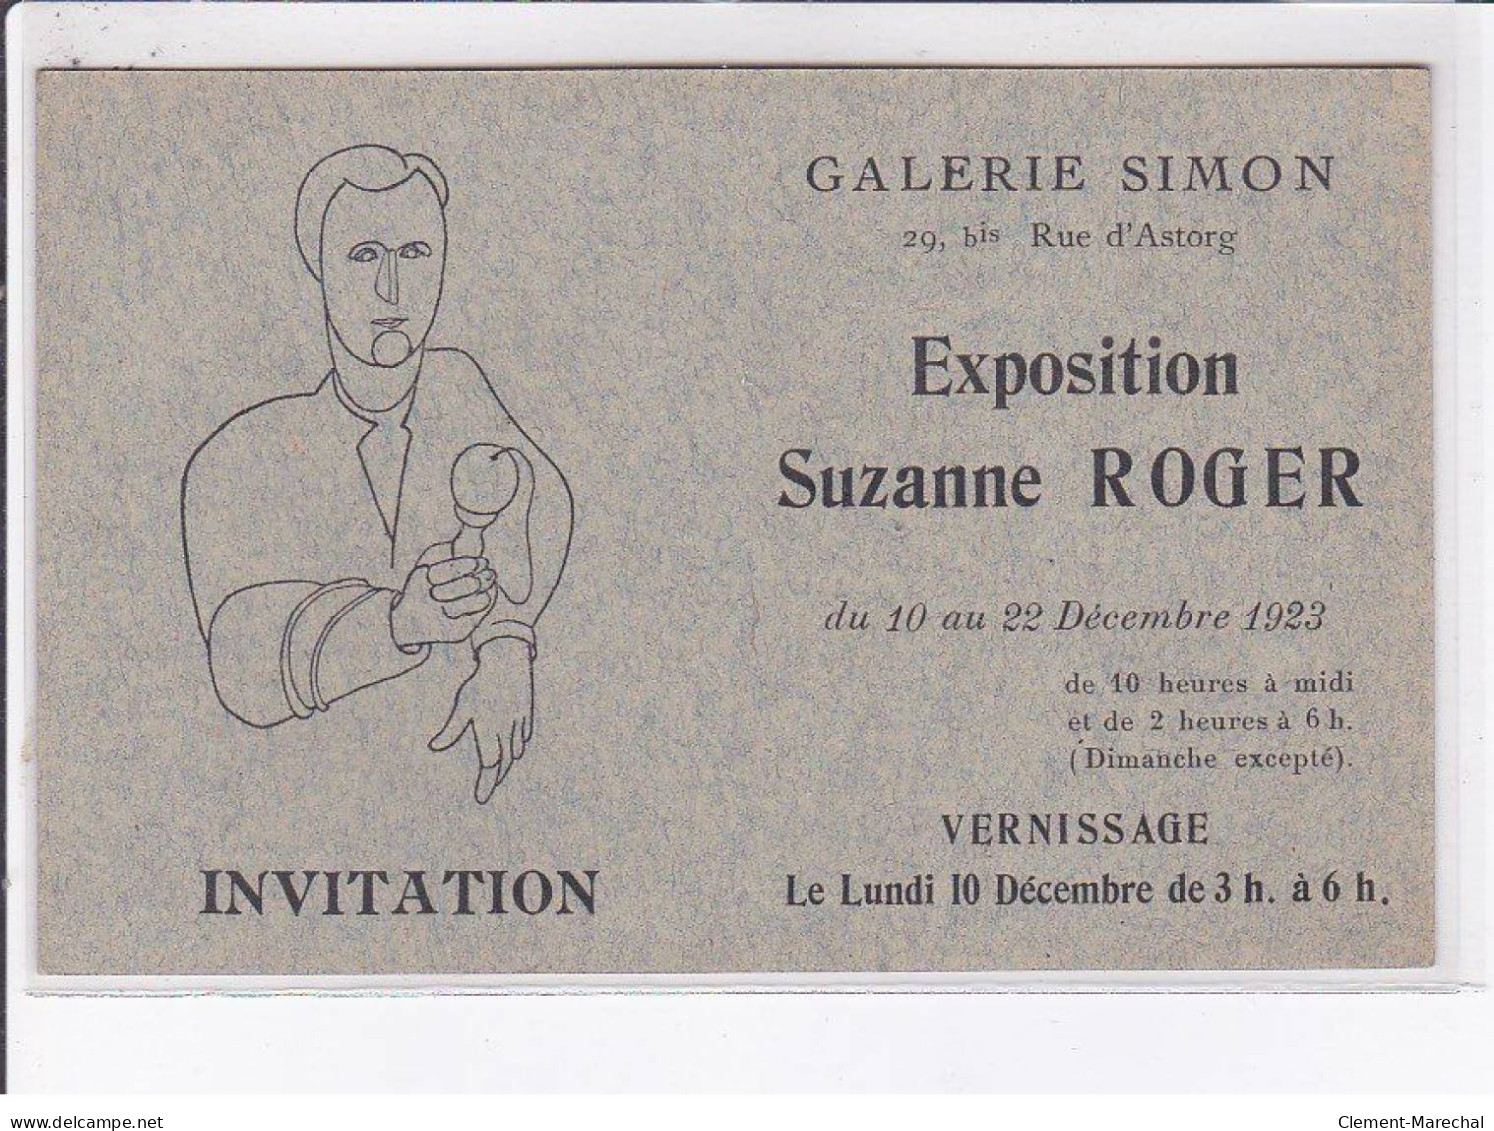 PUBLICITE: Invitation, Galerie Simon, Exposition Suzanne Roger, Vernissage - Très Bon état - Publicité